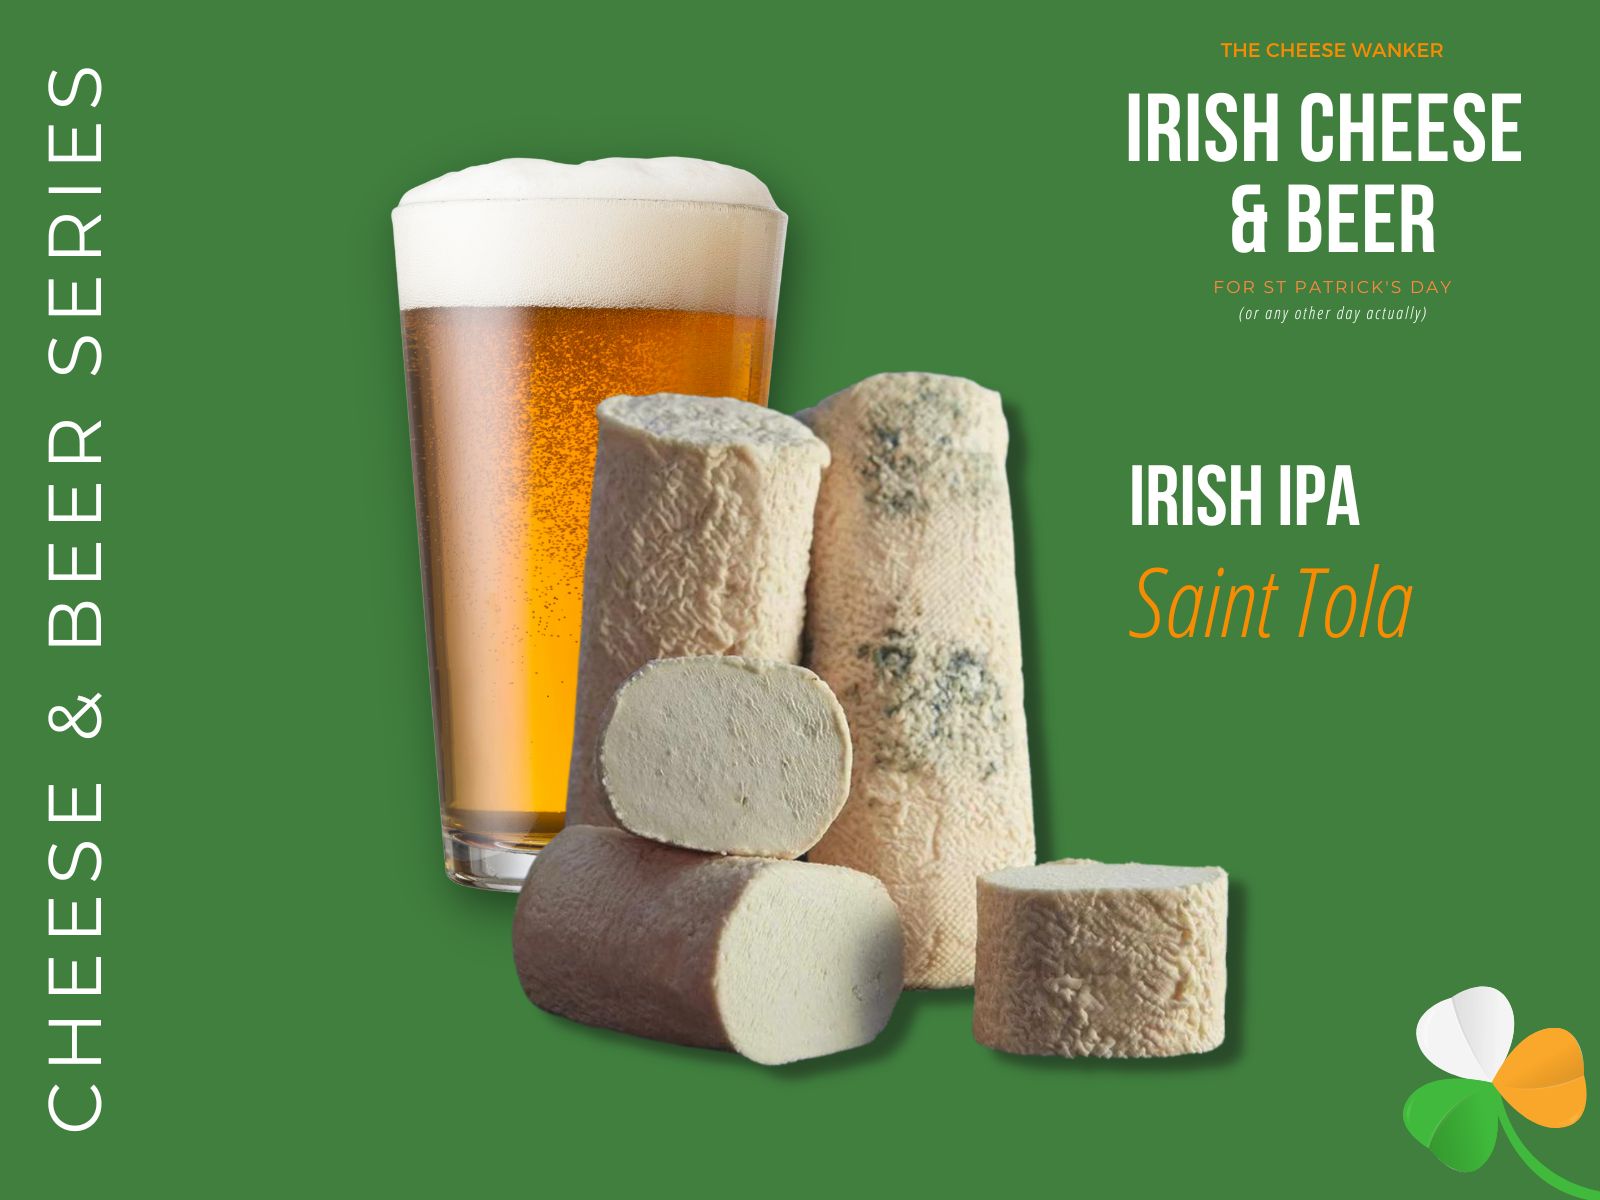 Saint Tola & Irish IPA